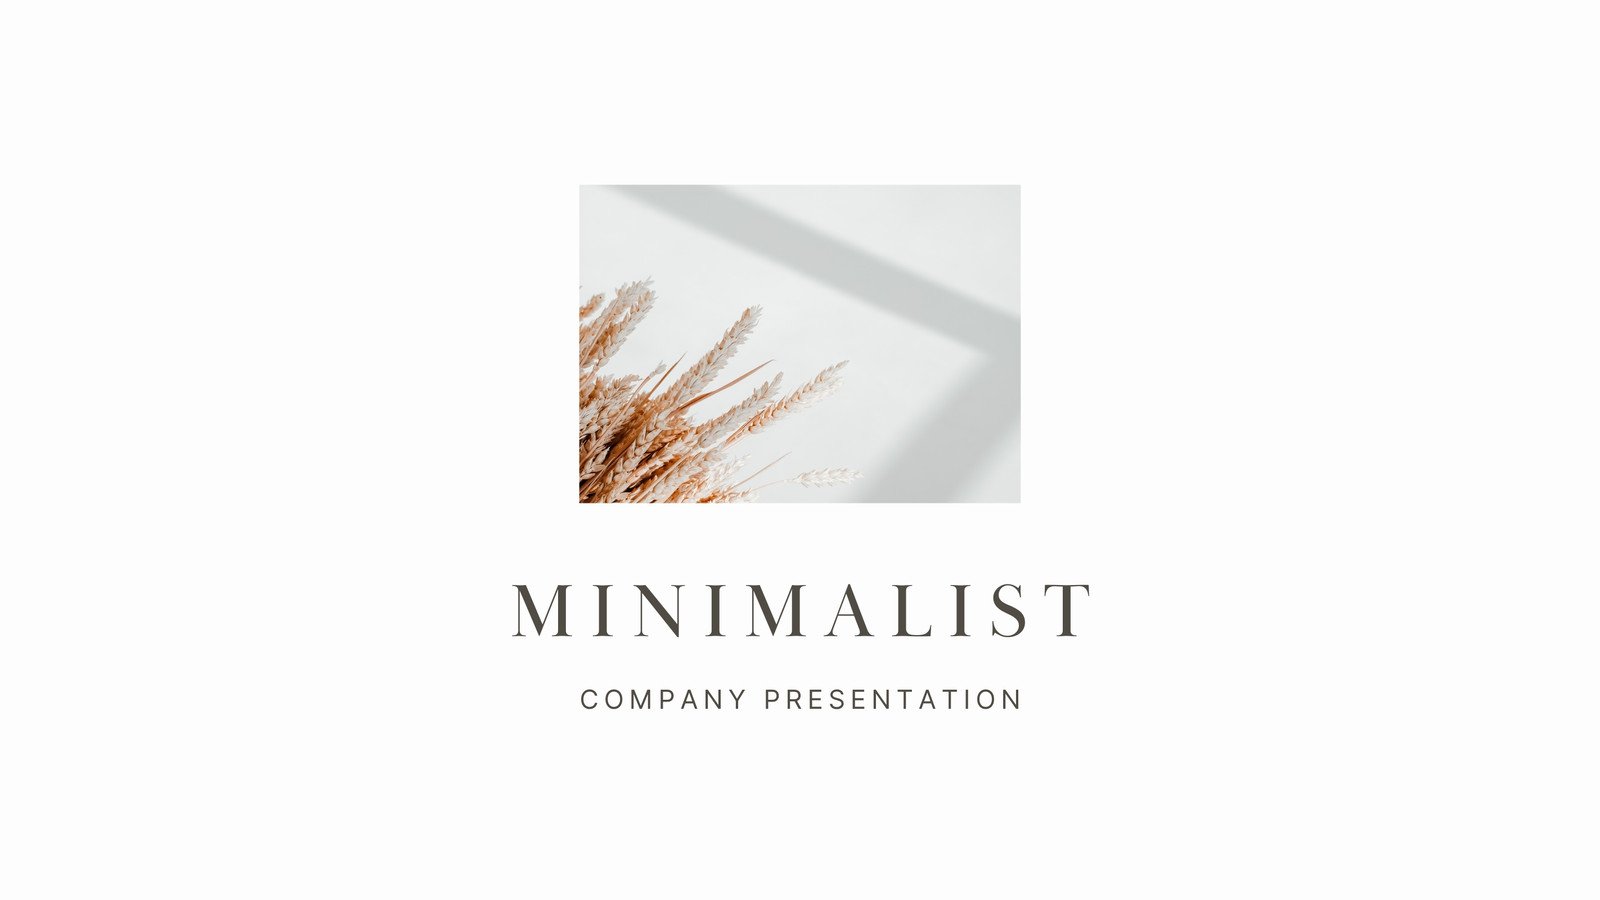 Minimalist Beige Cream Brand Proposal Presentation